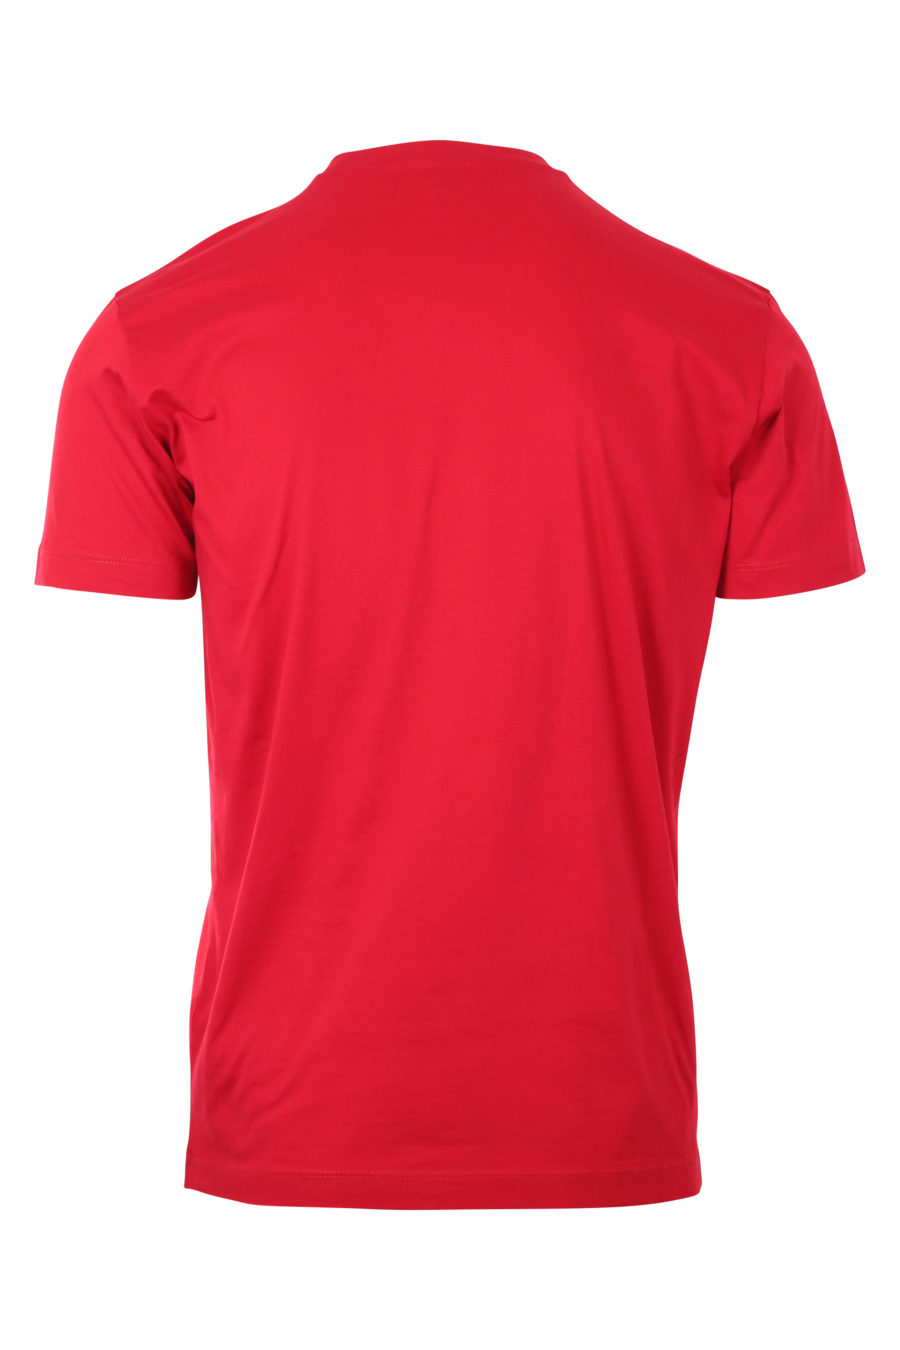 T-shirt rouge foncé avec logo "icon" - IMG 9746